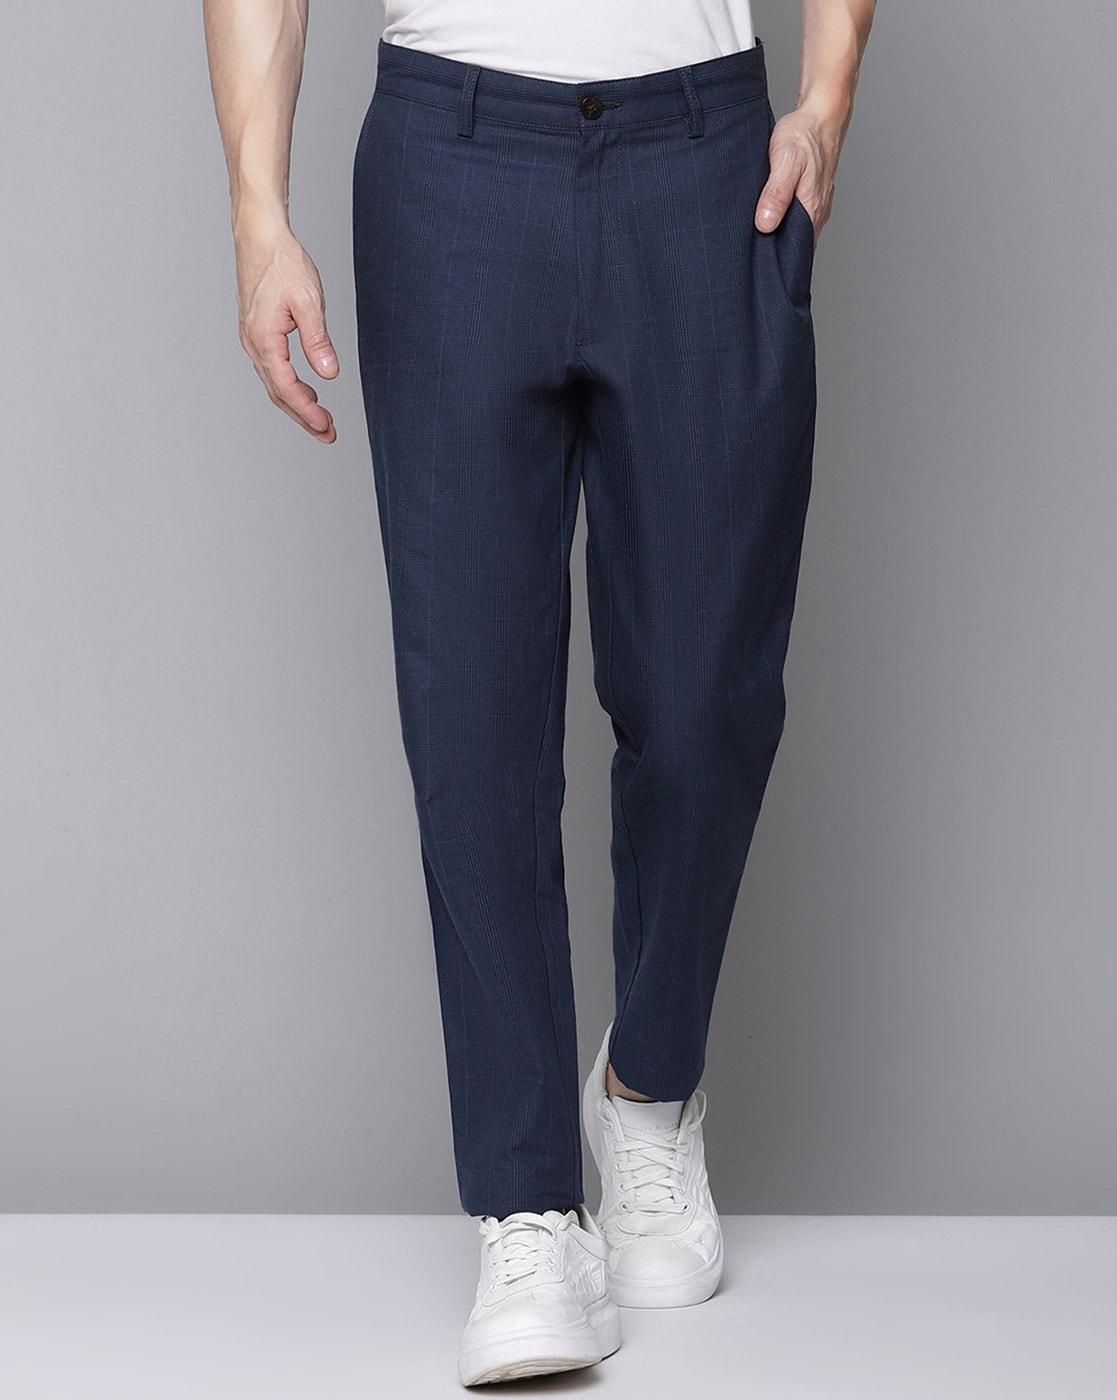 Buy Blue Trousers  Pants for Men by Ben Sherman Online  Ajiocom